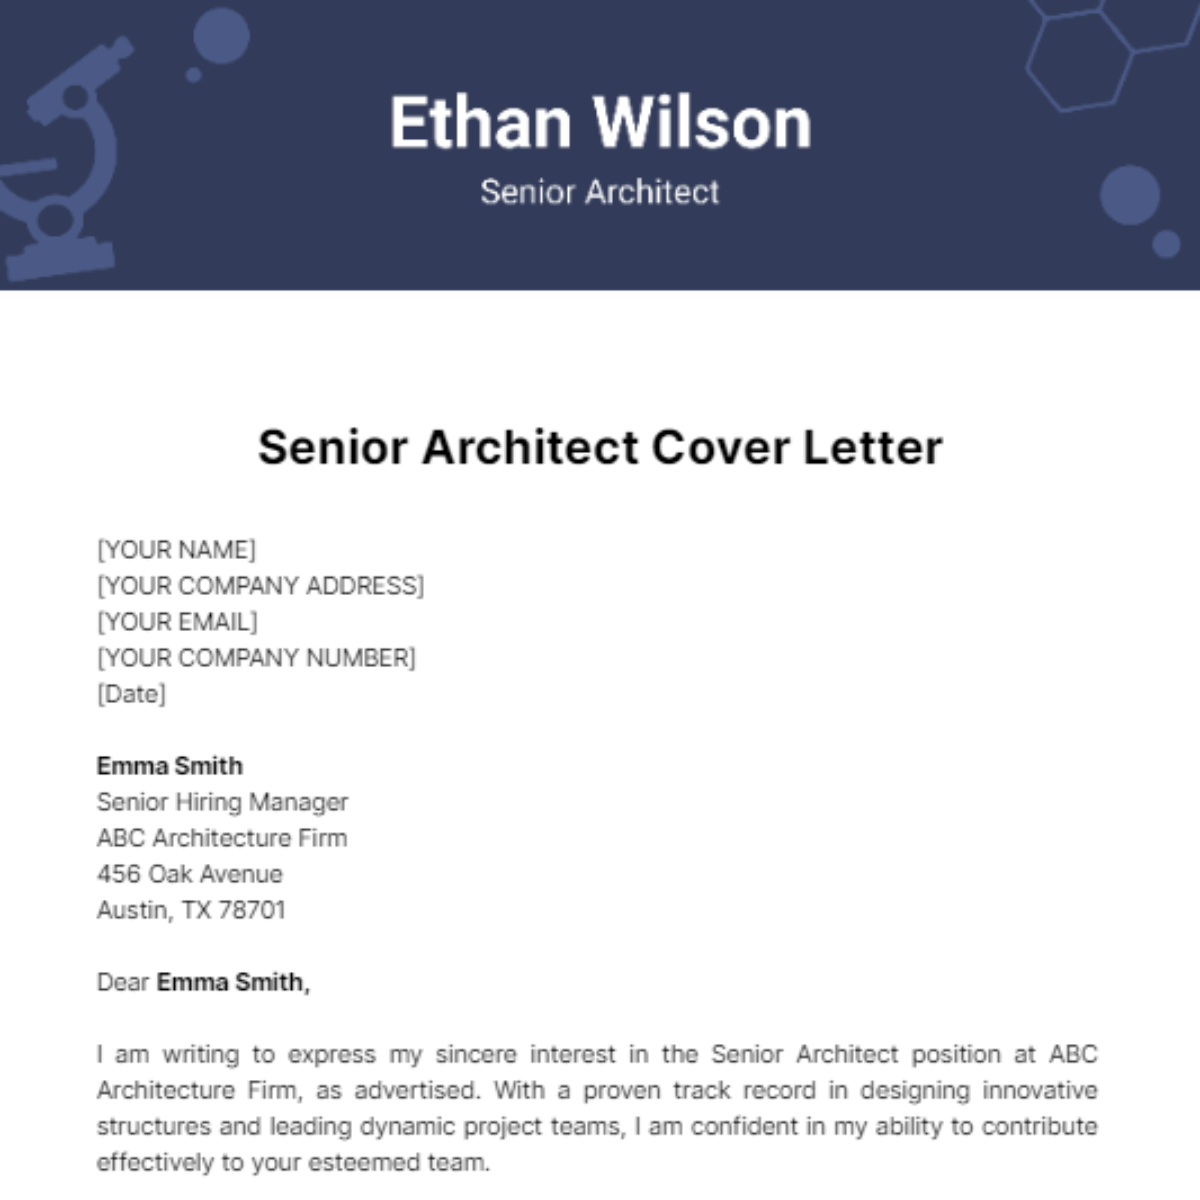 Senior Architect Cover Letter Template